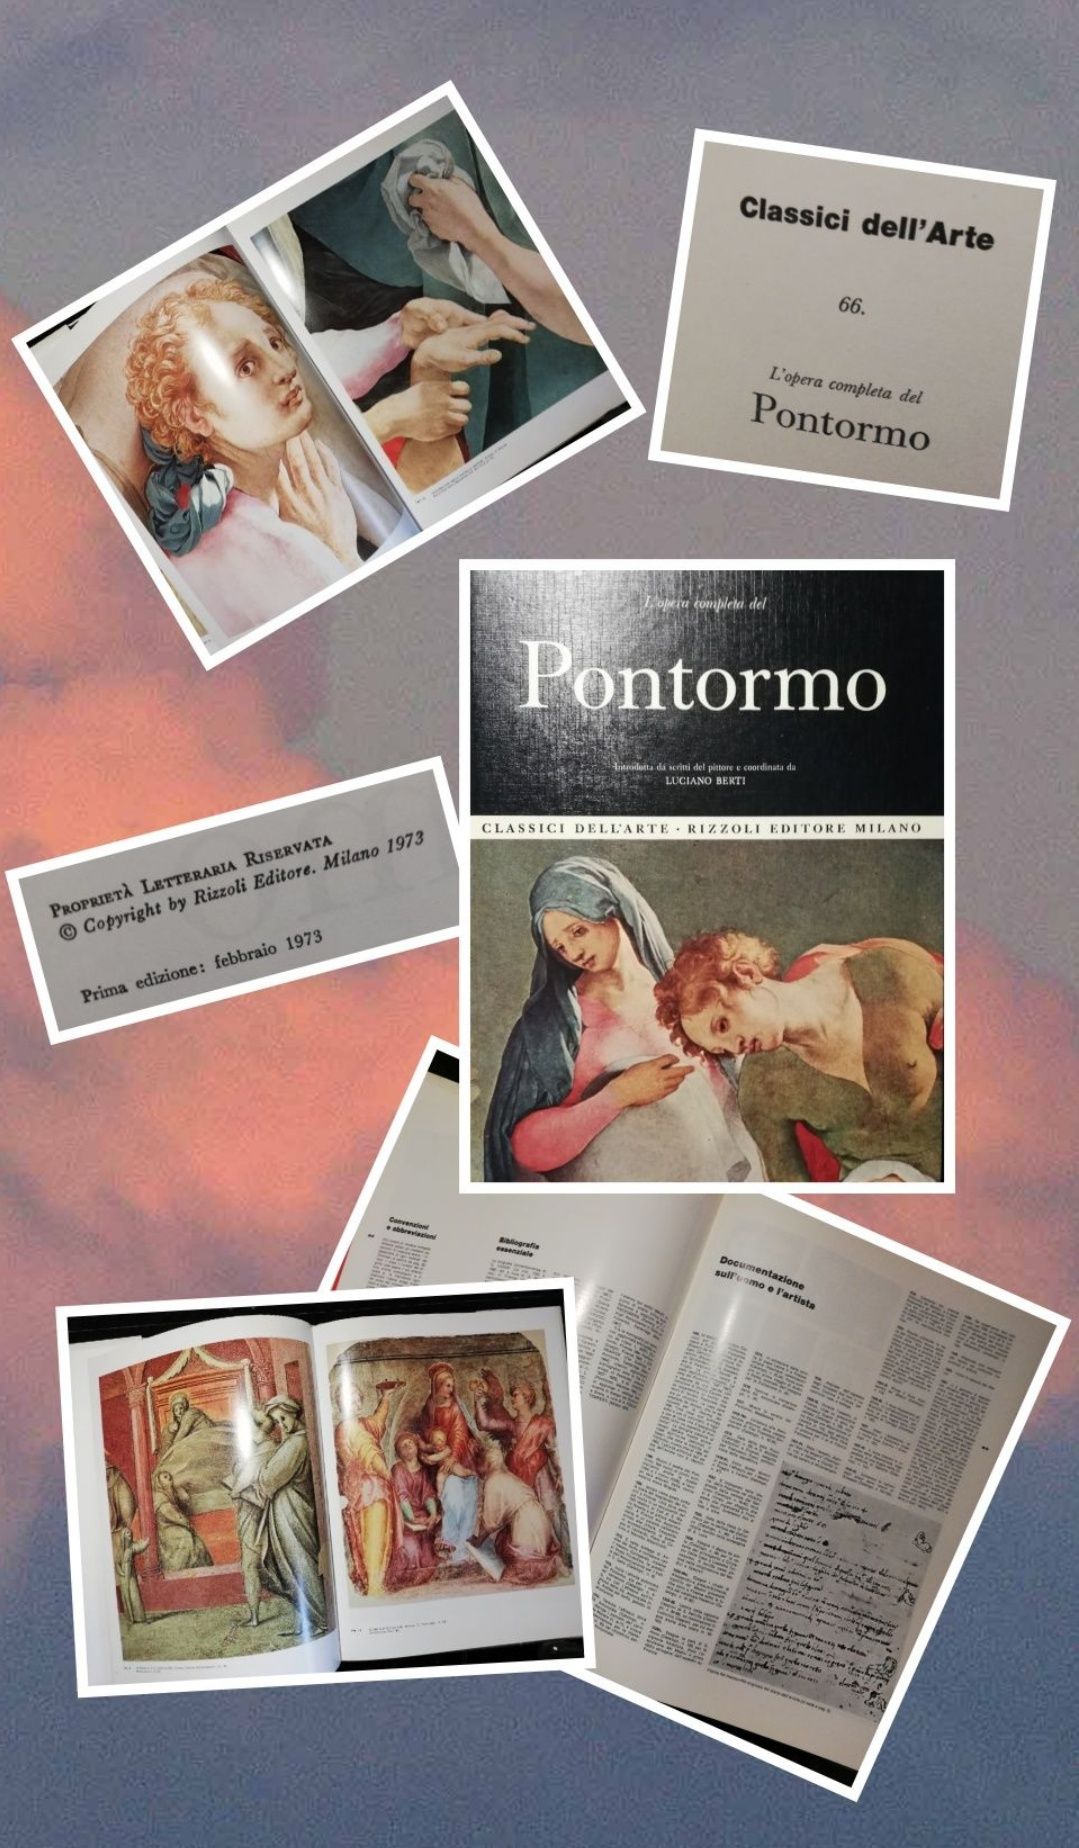 Художественный альбом #66
Понтормо (Pontormo)